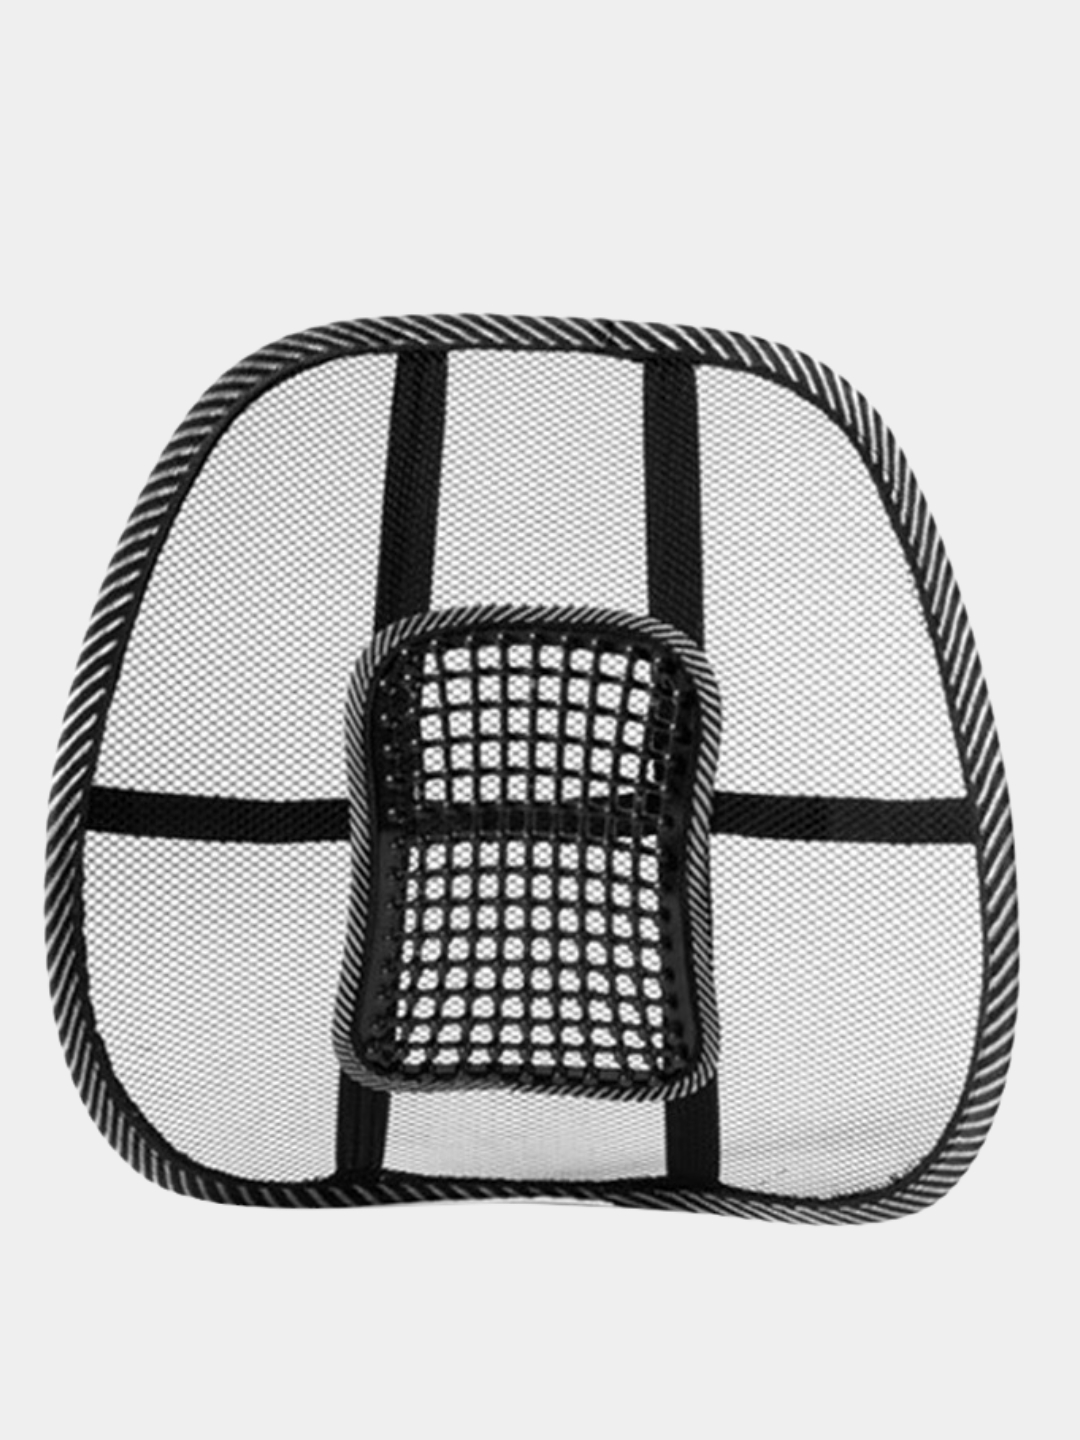 Поддерживающая подушка для спины LSCREEN M-912, черная сетка